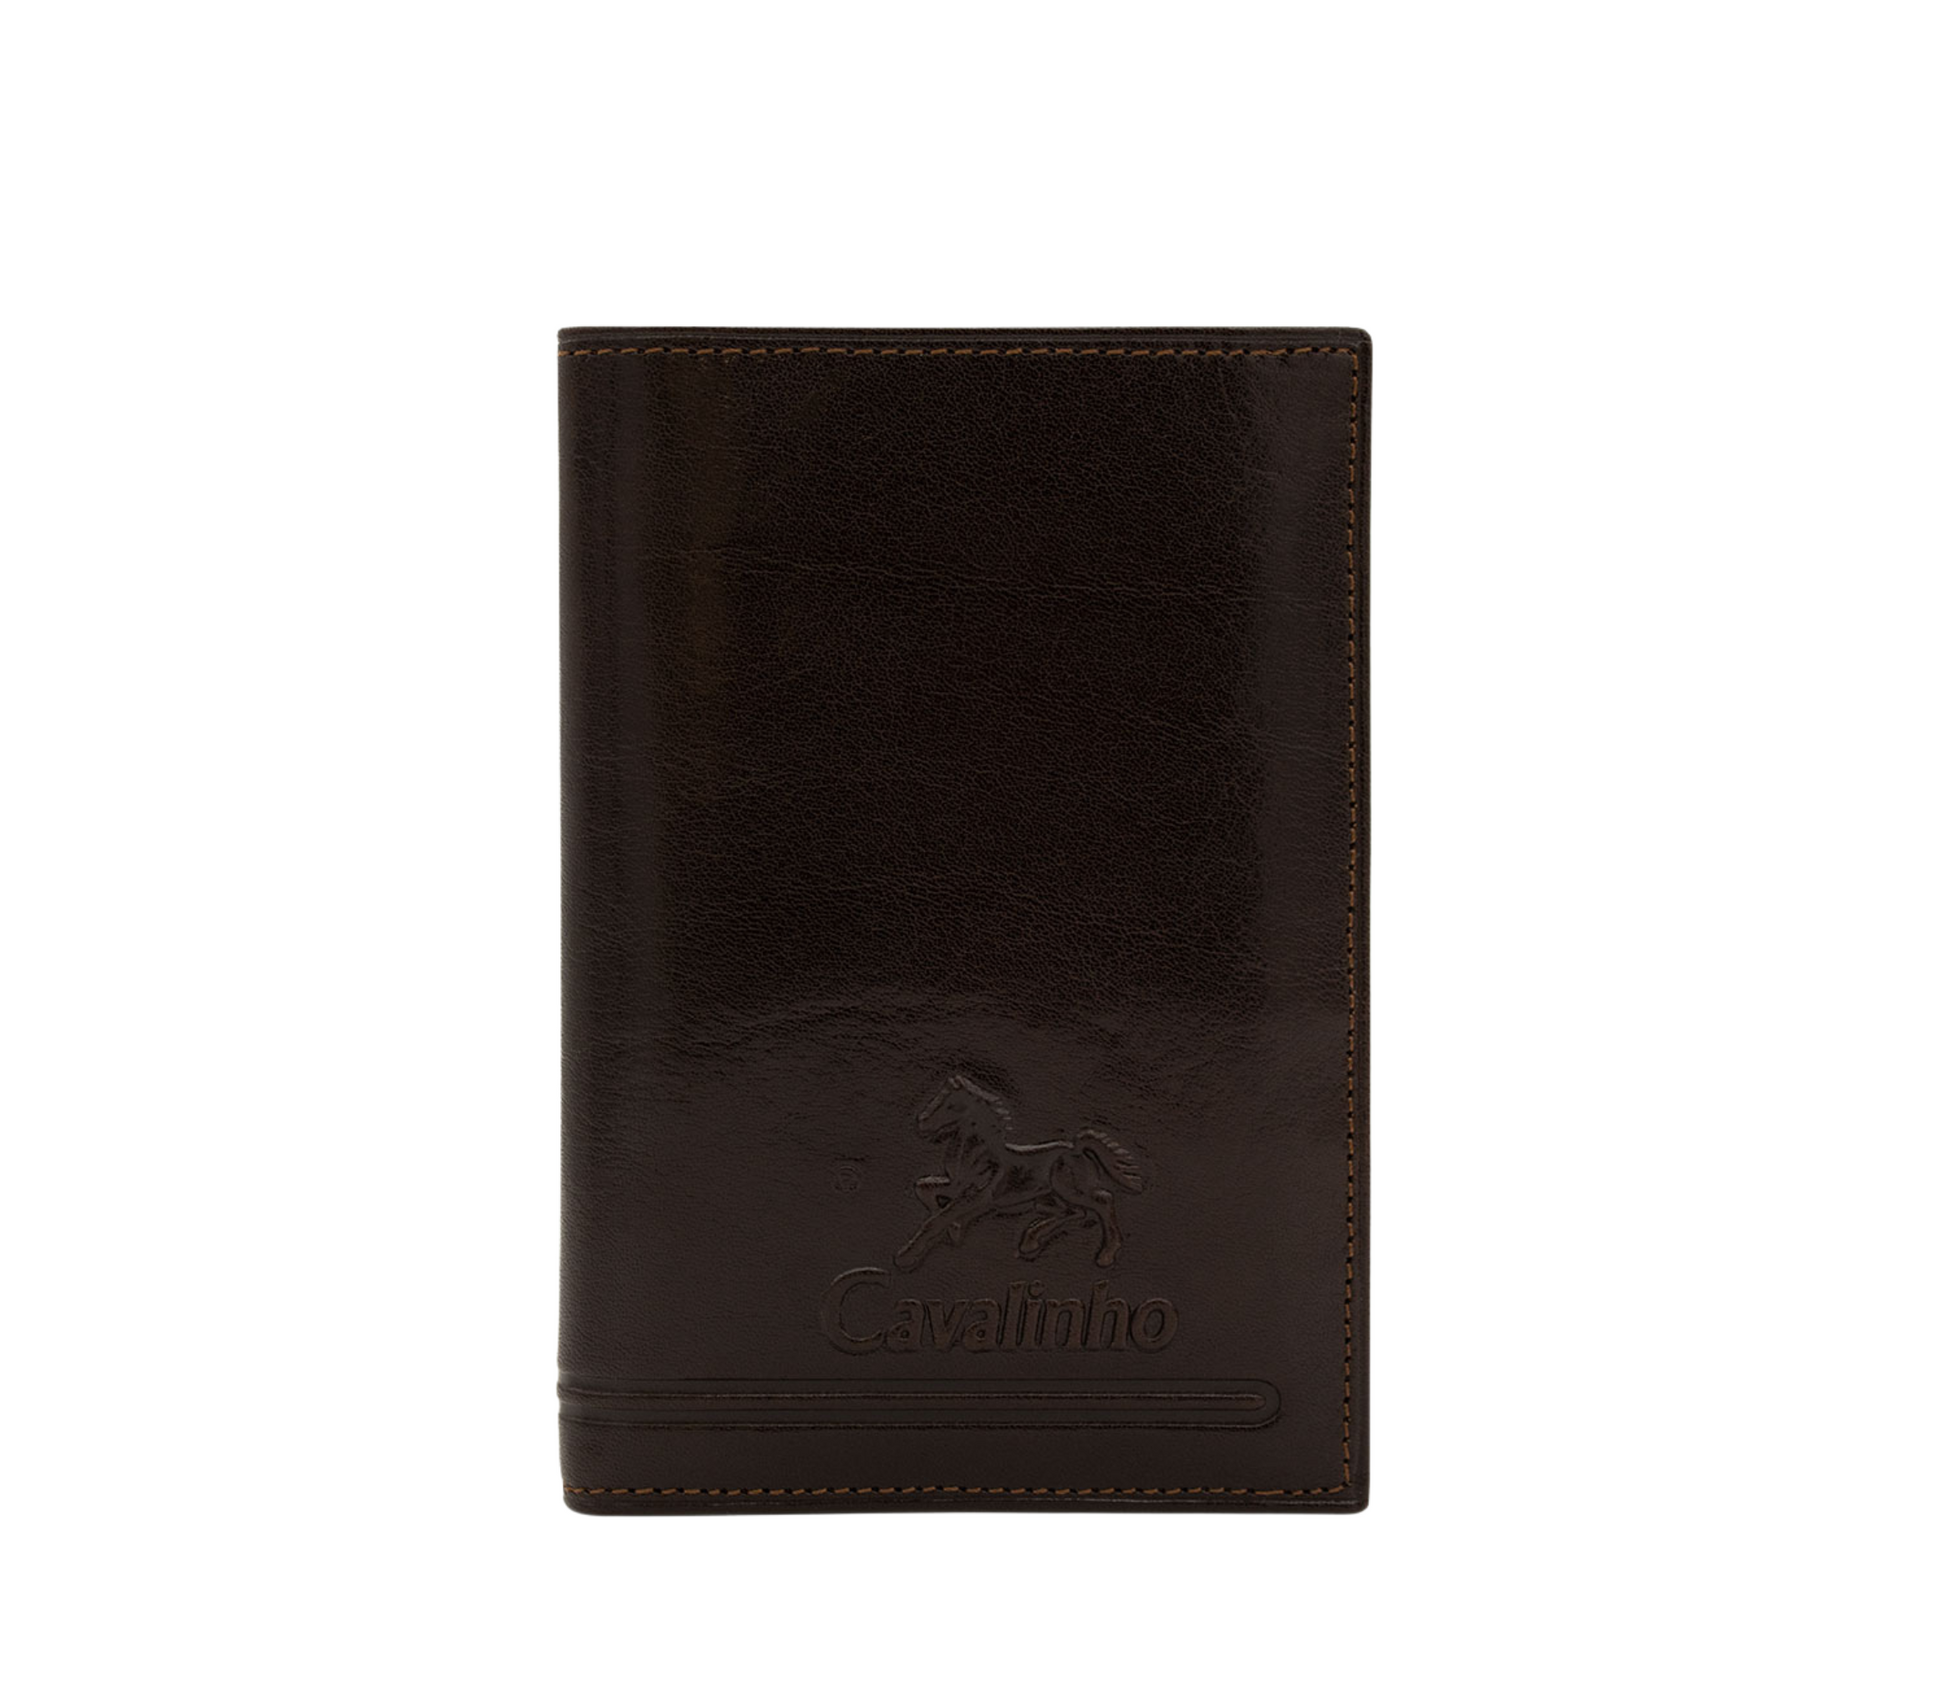 Cavalinho Men's 2 in 1 Bifold Leather Wallet - Brown - 28610556.02_P01